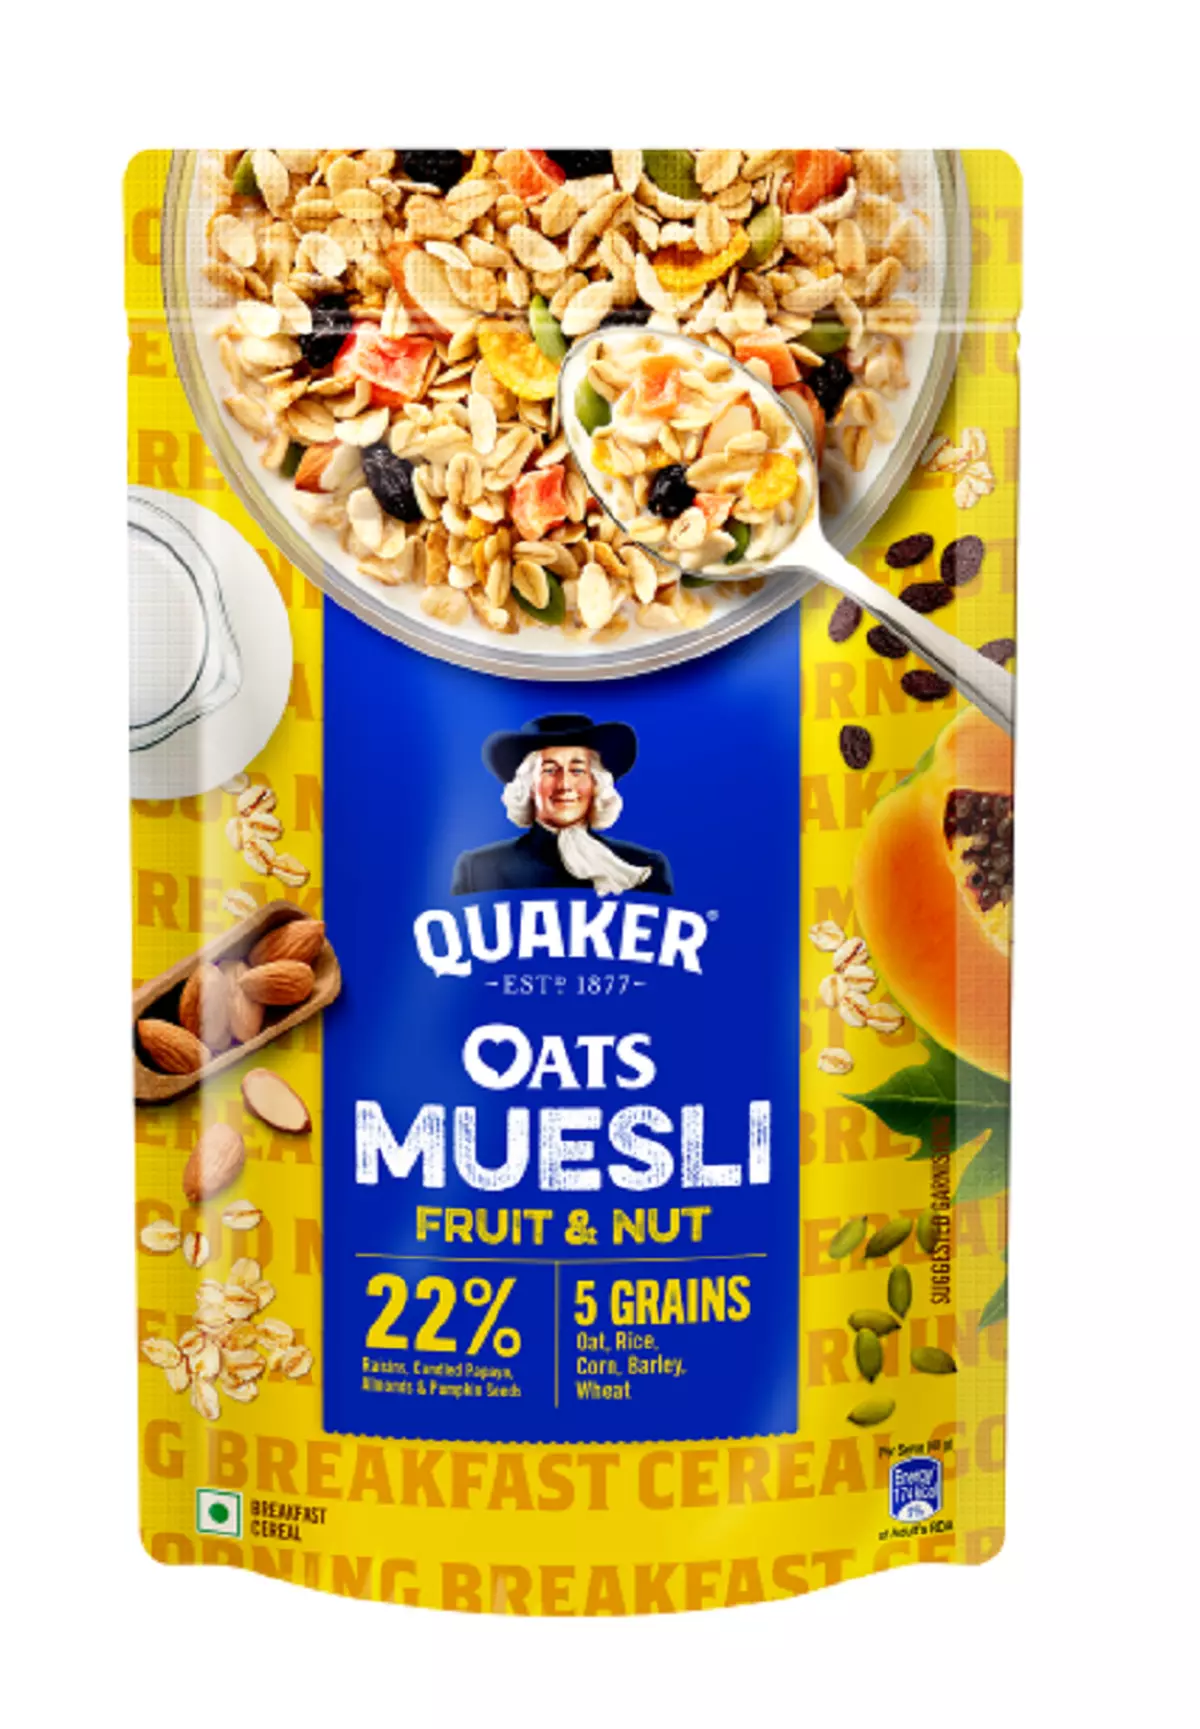 PepsiCo launches Quaker Cruesli in Spain - Just Food